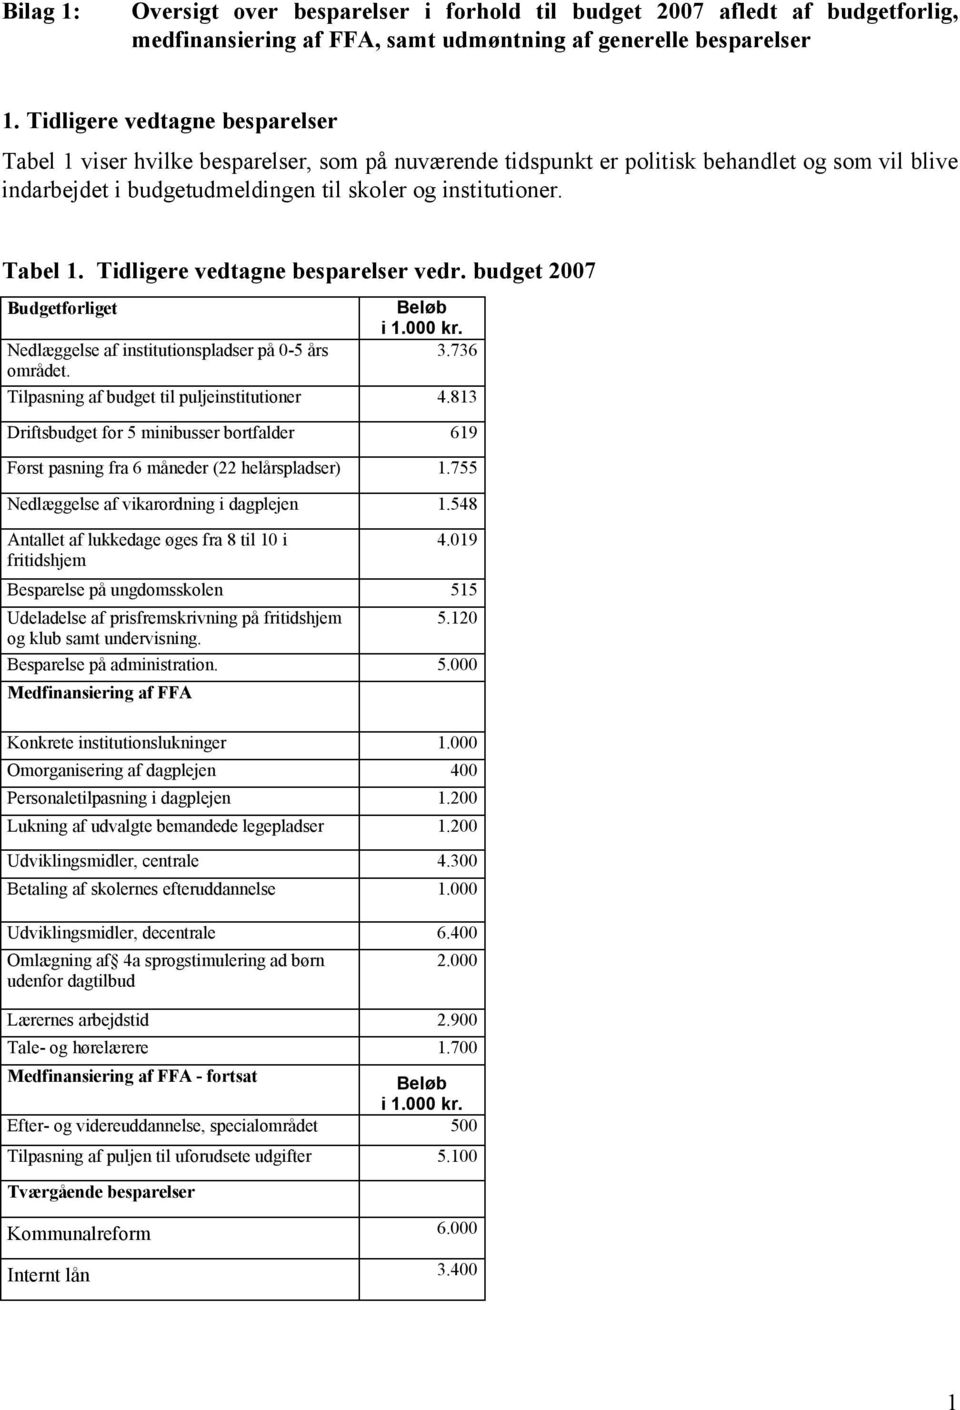 budget Budgetforliget Nedlæggelse af institutionspladser på 0-5 års området. Beløb i 1.000 kr. 3.736 Tilpasning af budget til puljeinstitutioner 4.